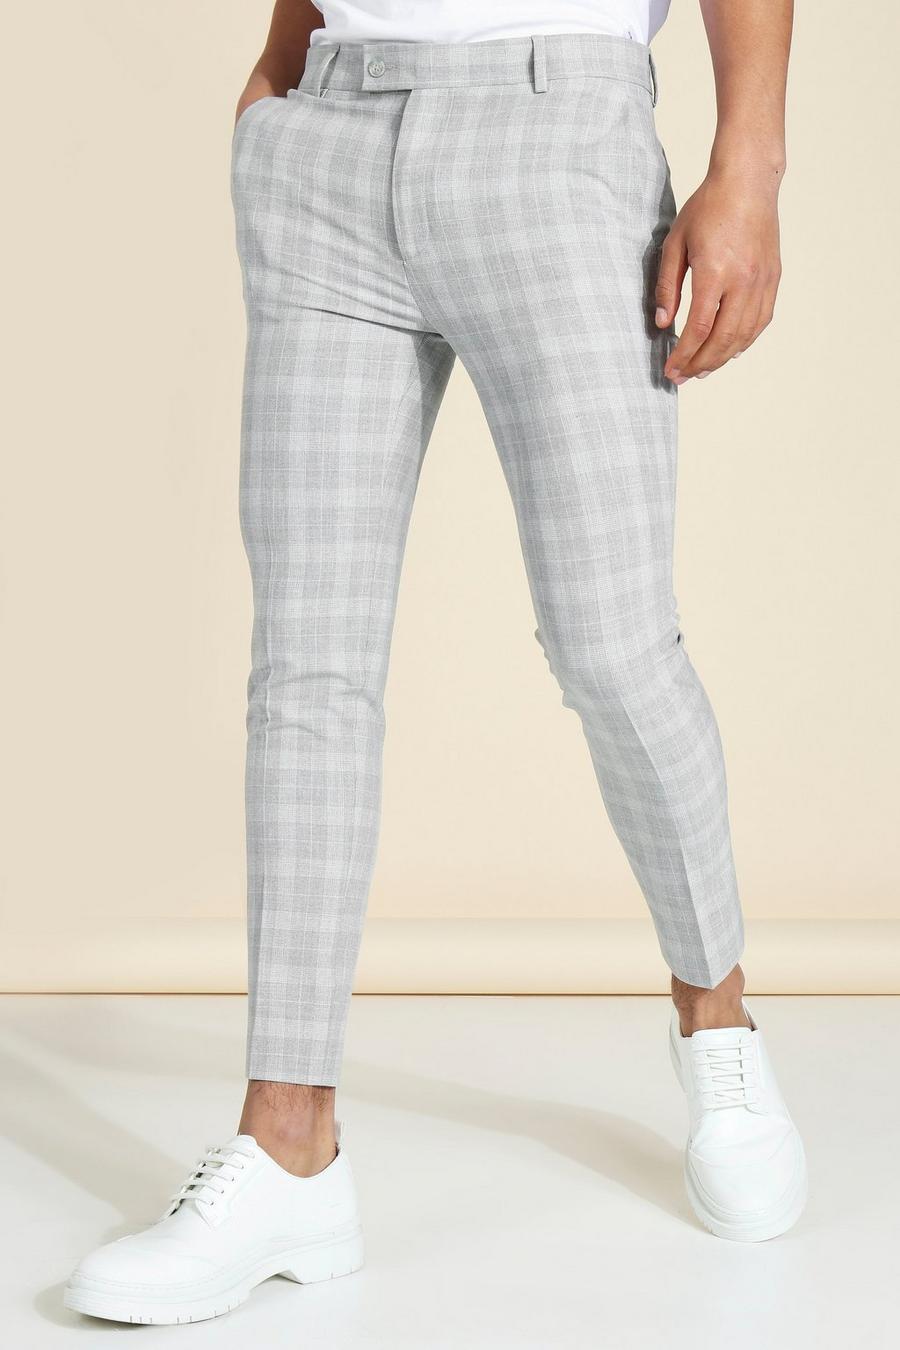 אפור gris מכנסי קרופ סופר סקיני מחויטים עם הדפס משבצות